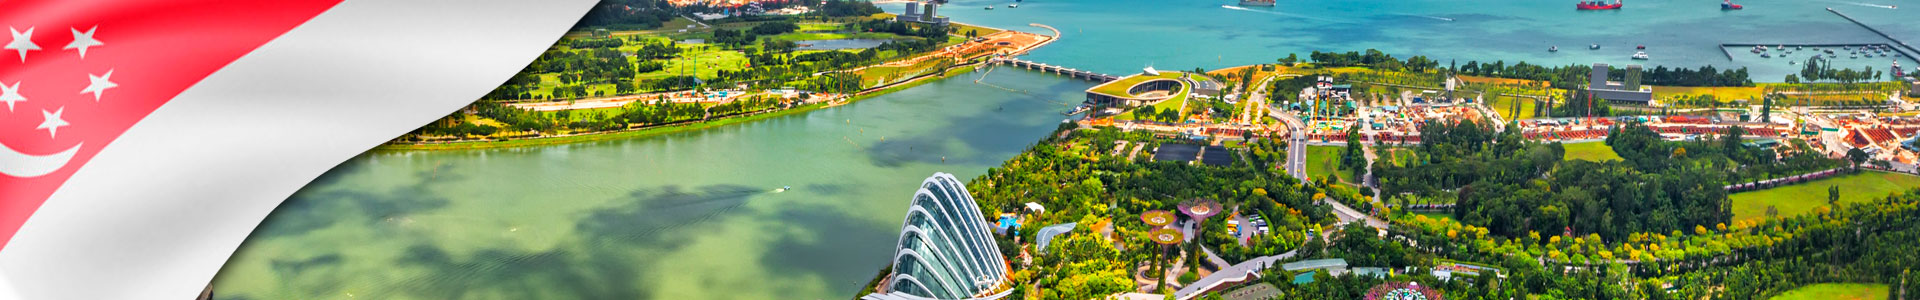 Bandera de Sinagpur y vista aérea de la ciudad de Singapur